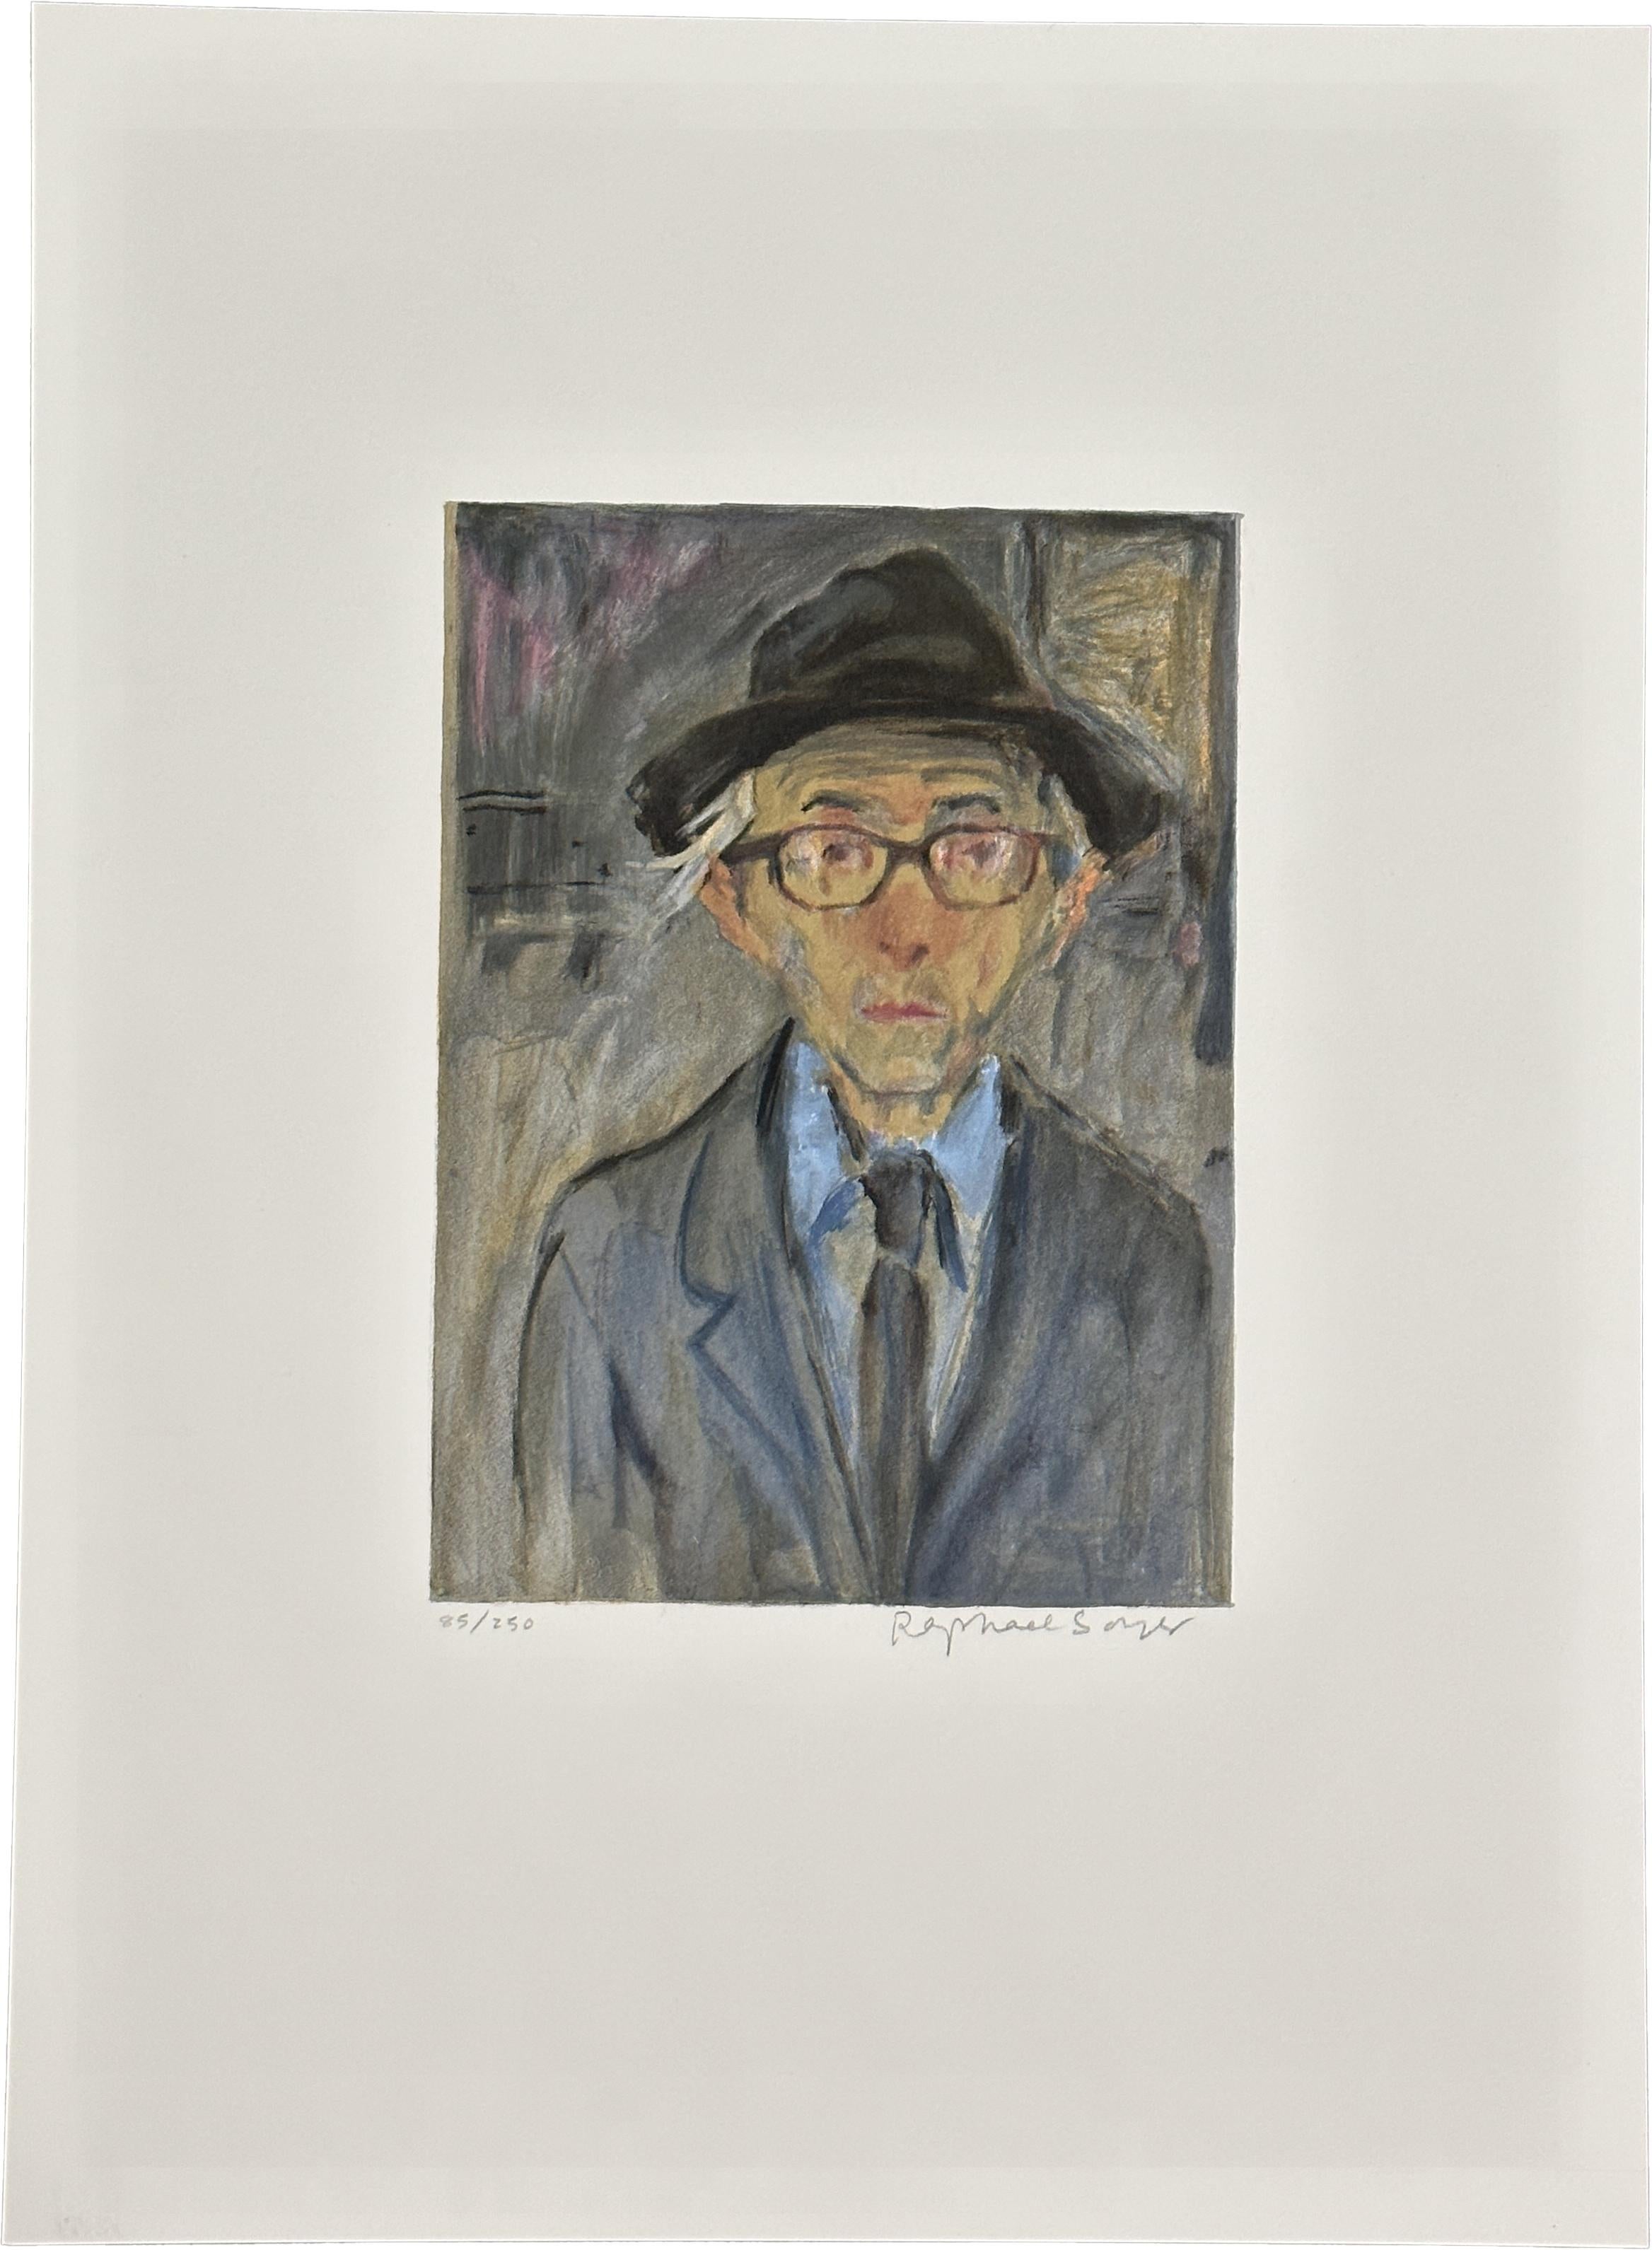 Raphael Soyer Portrait Print – Selbstporträt 1979 Signierte Lithographie in limitierter Auflage